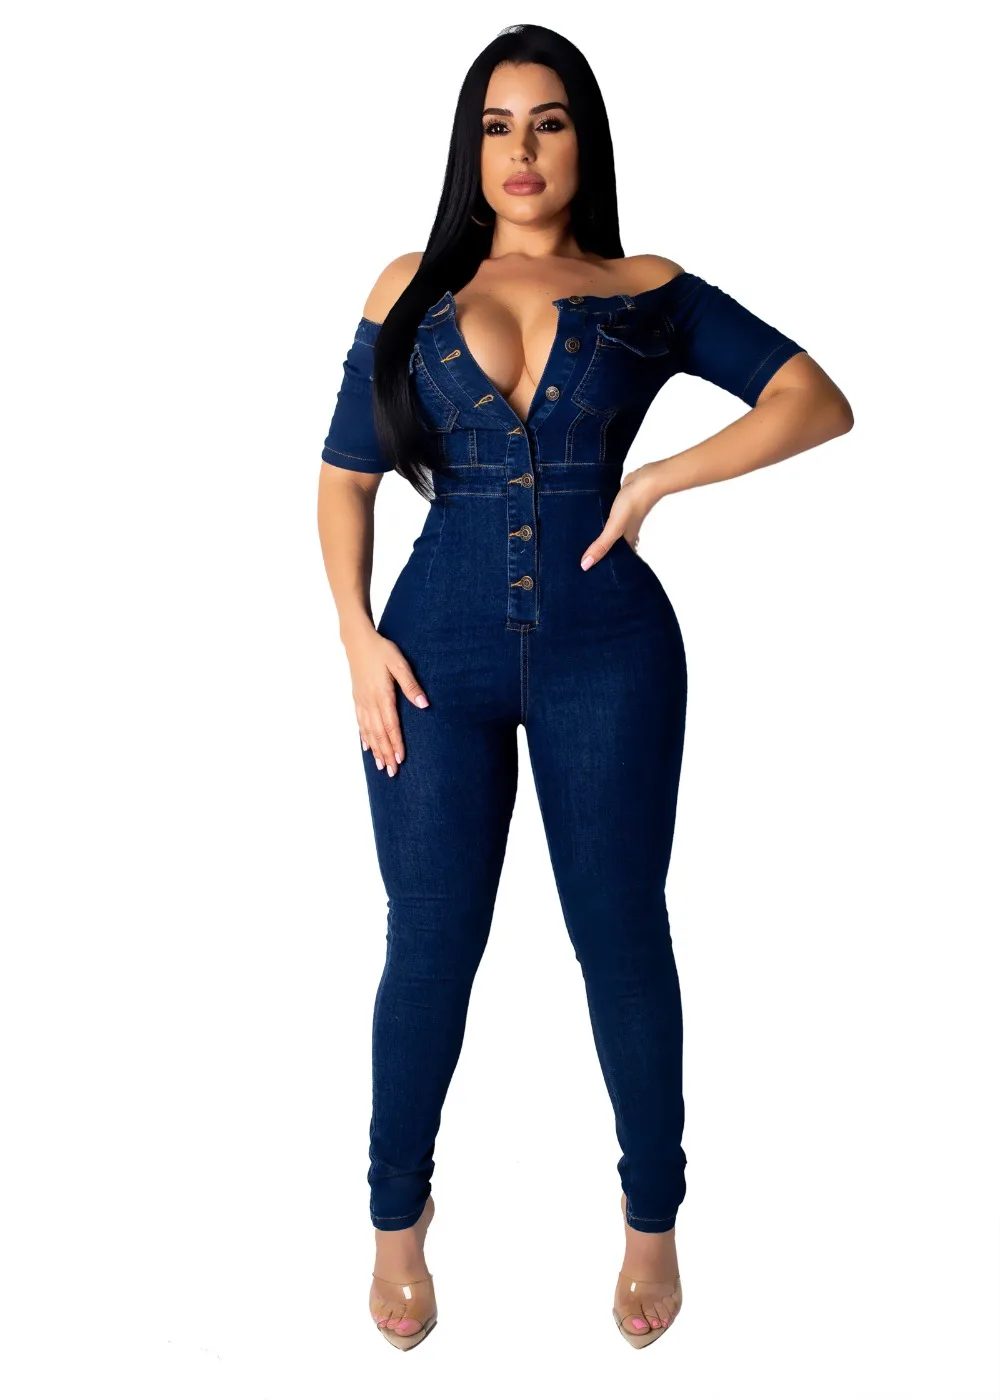 Wjustforu сексуальный обтягивающий джинсовый комбинезон для женщин с вырезом лодочкой, Модный облегающий джинсовый комбинезон, женский элегантный комбинезон с коротким рукавом на молнии